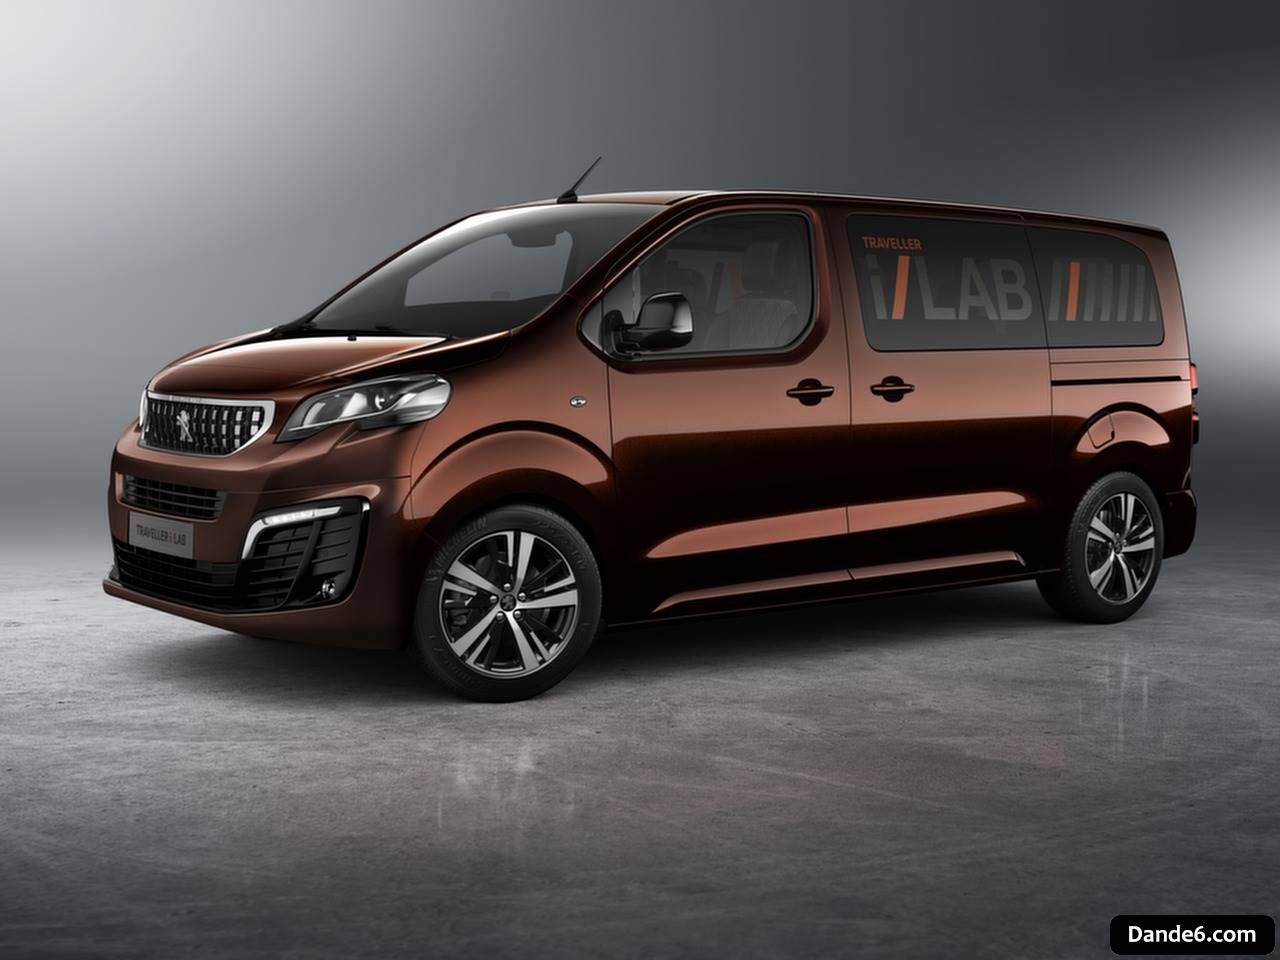 2016 Peugeot Traveller i-Lab Concept